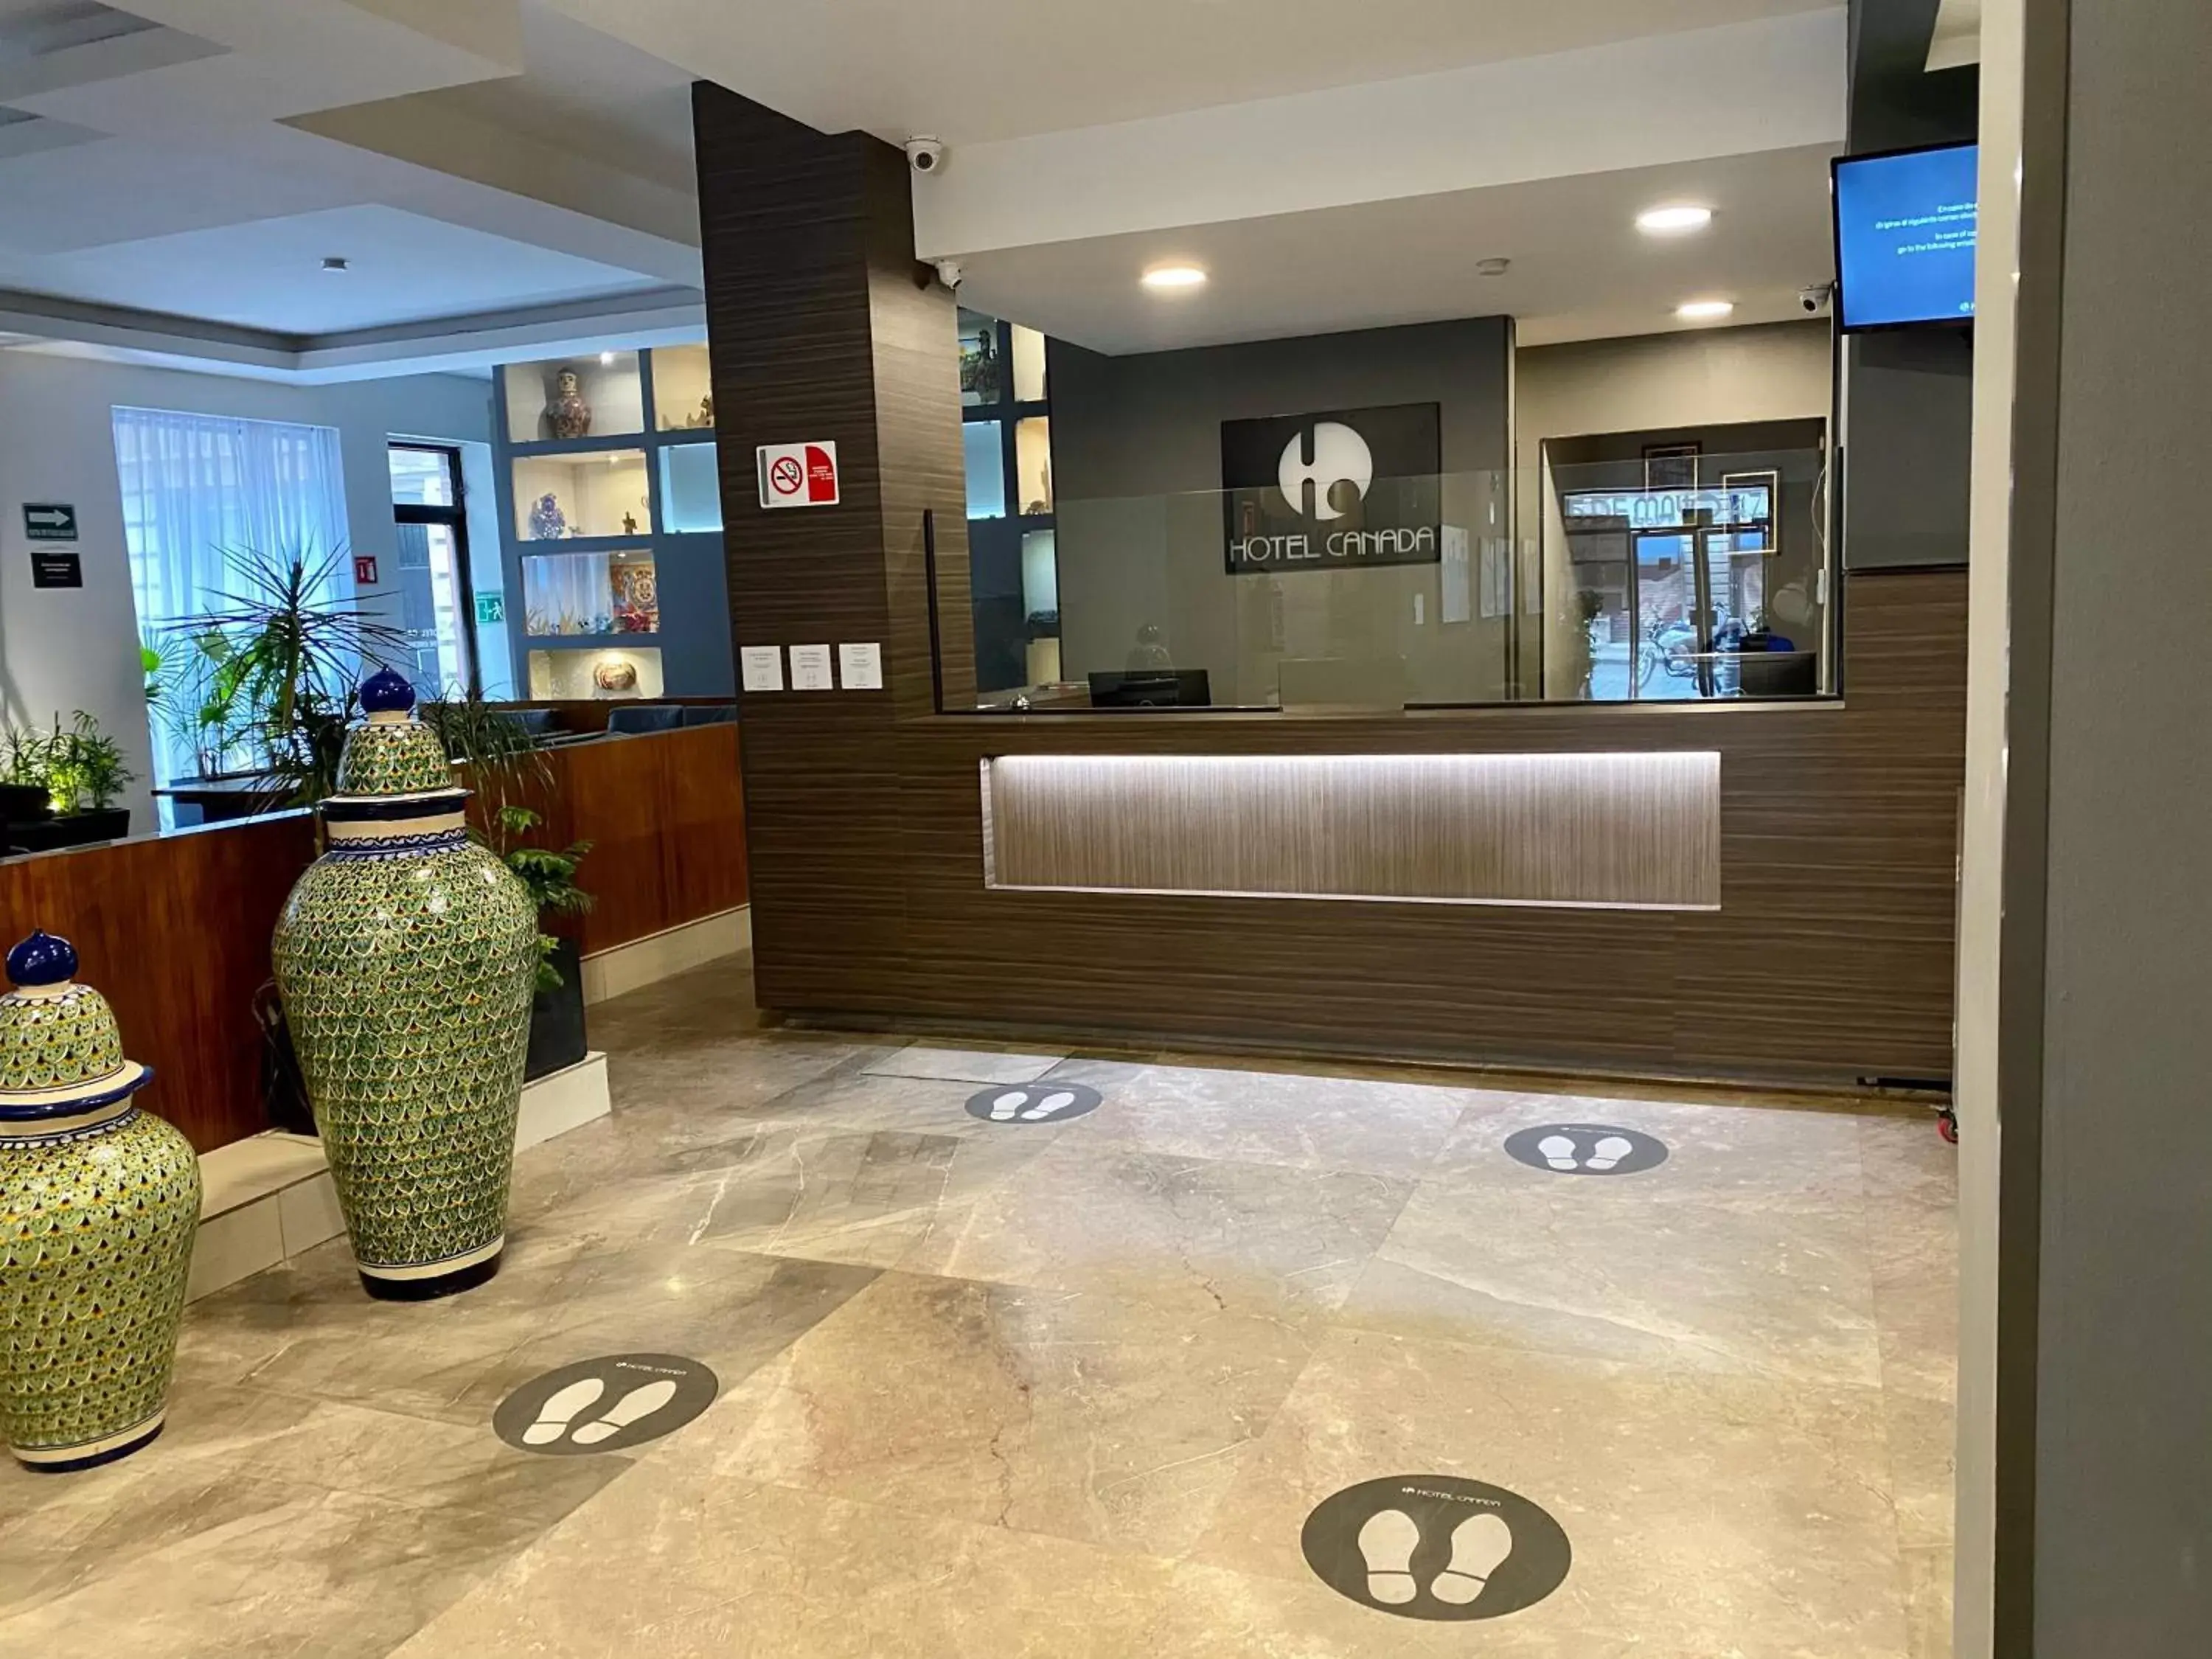 Lobby or reception, Lobby/Reception in Hotel Canada